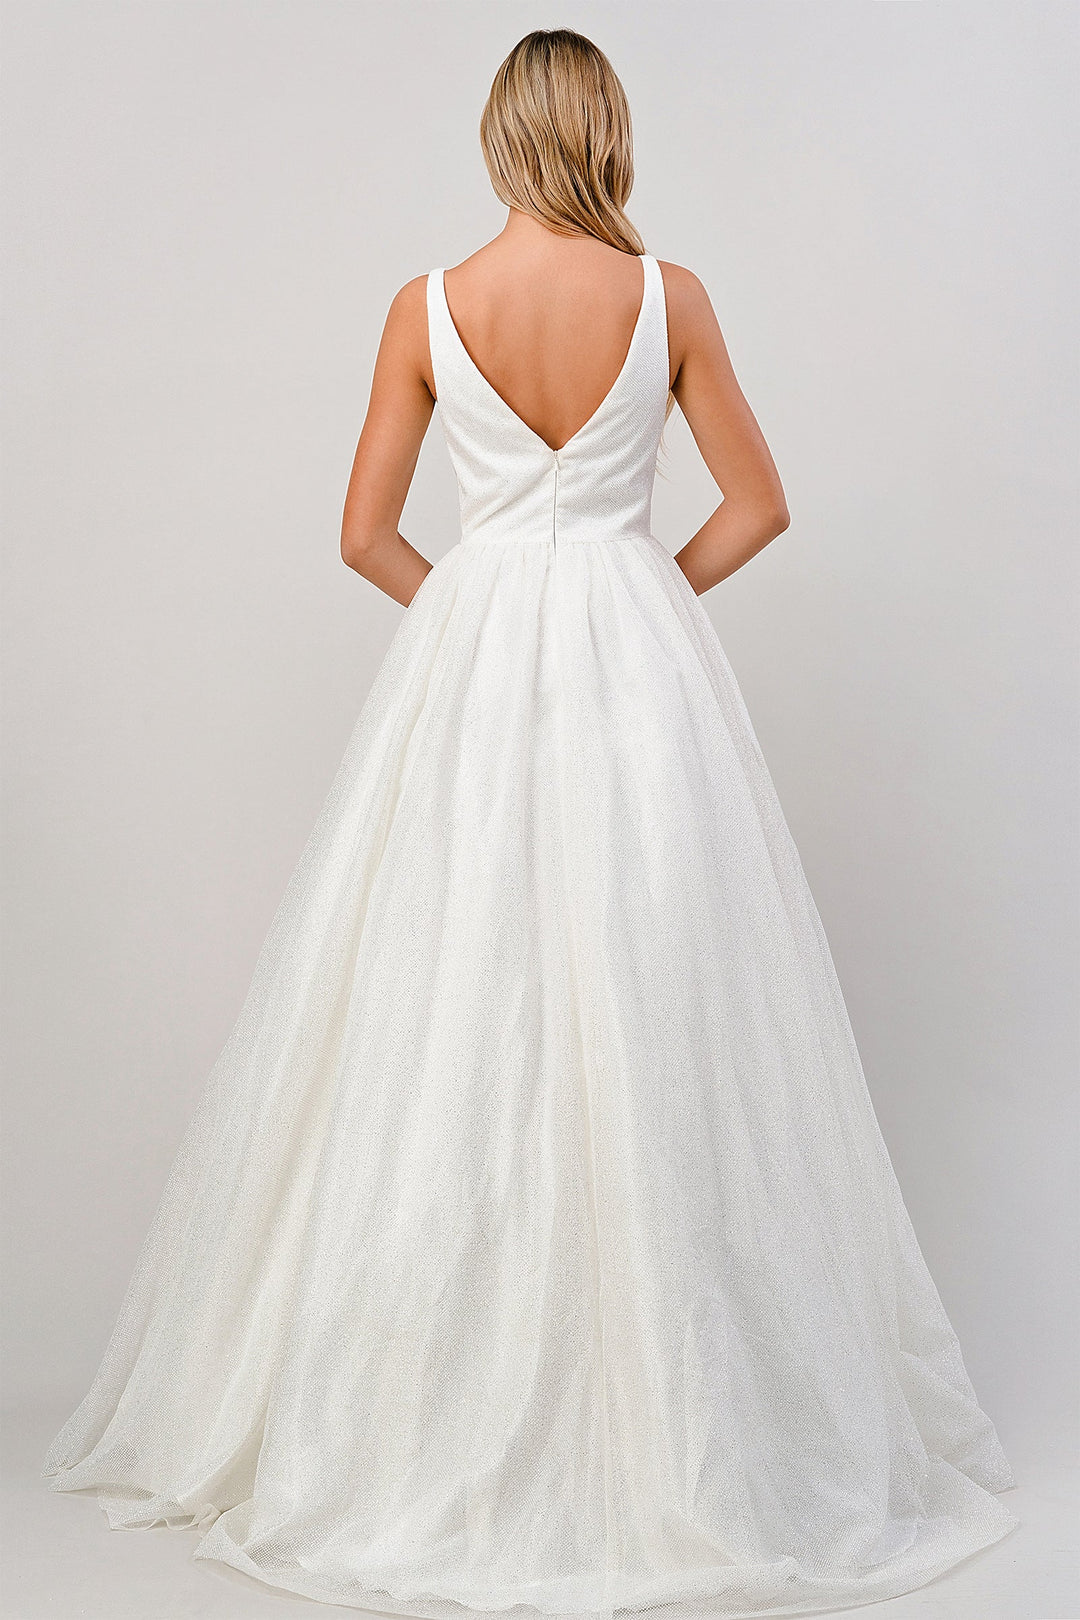 Glitter Wedding Ball Gown by Cinderella Divine CB077W